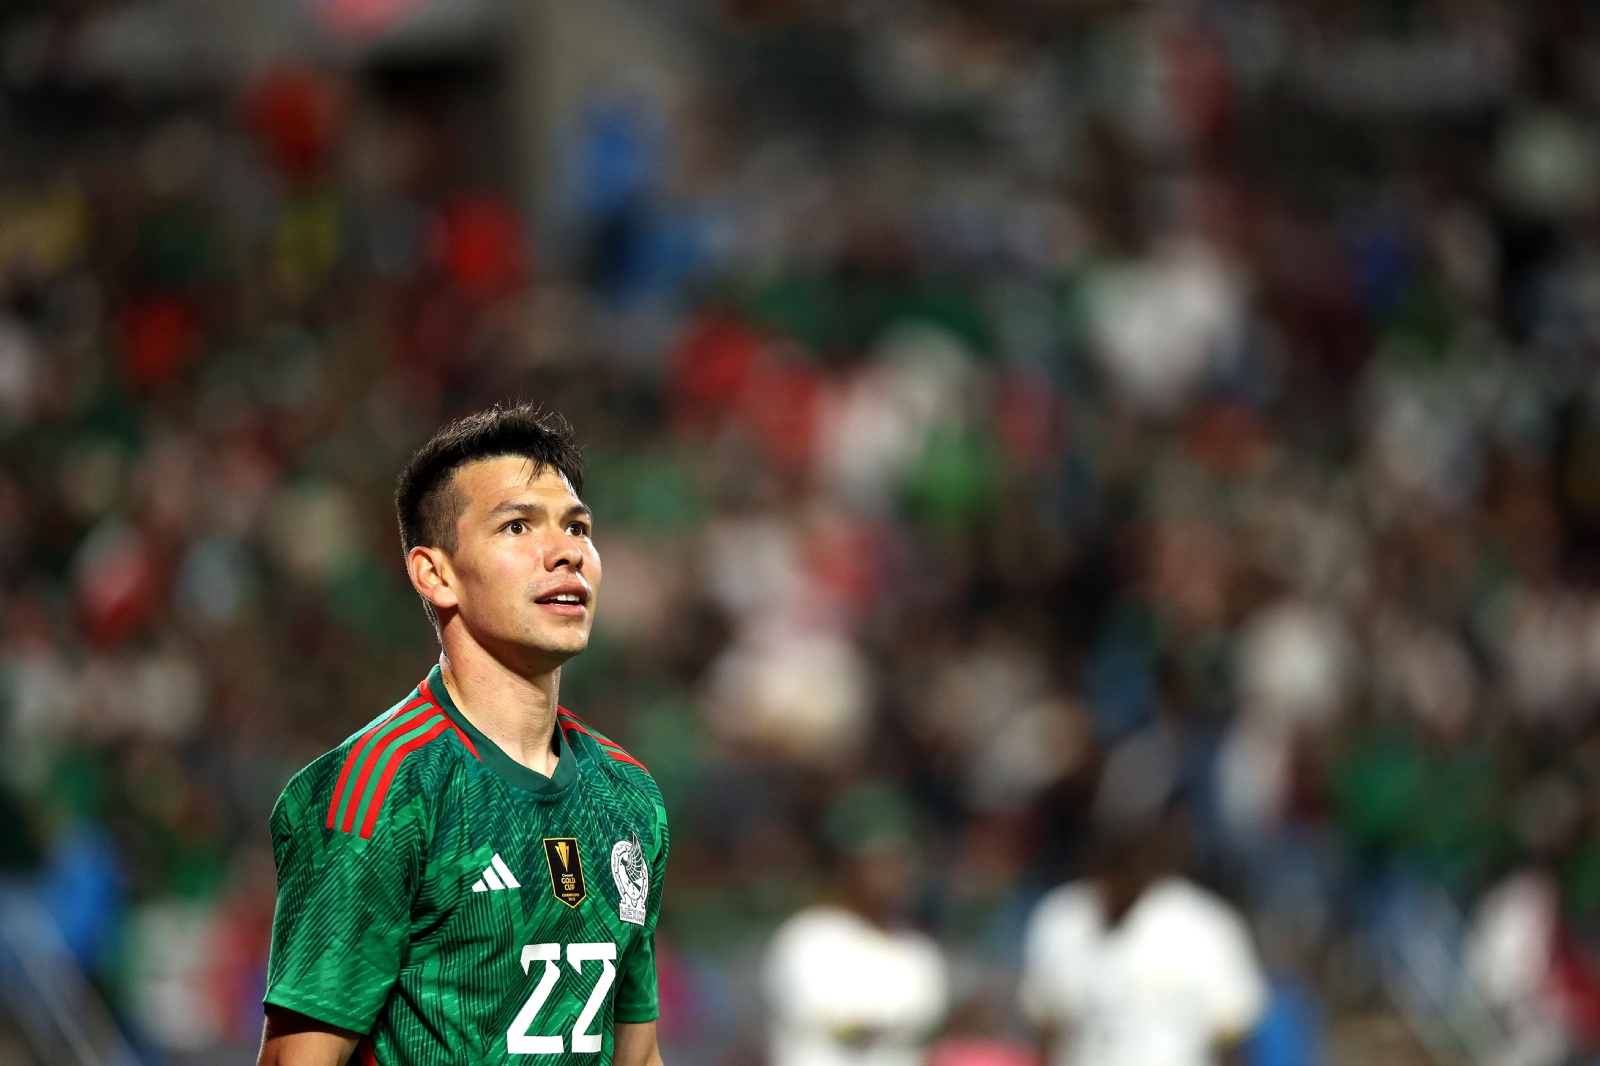 Chucky Lozano escribe carta a los NUEVOS CONVOCADOS tras ser borrado de Selección Mexicana